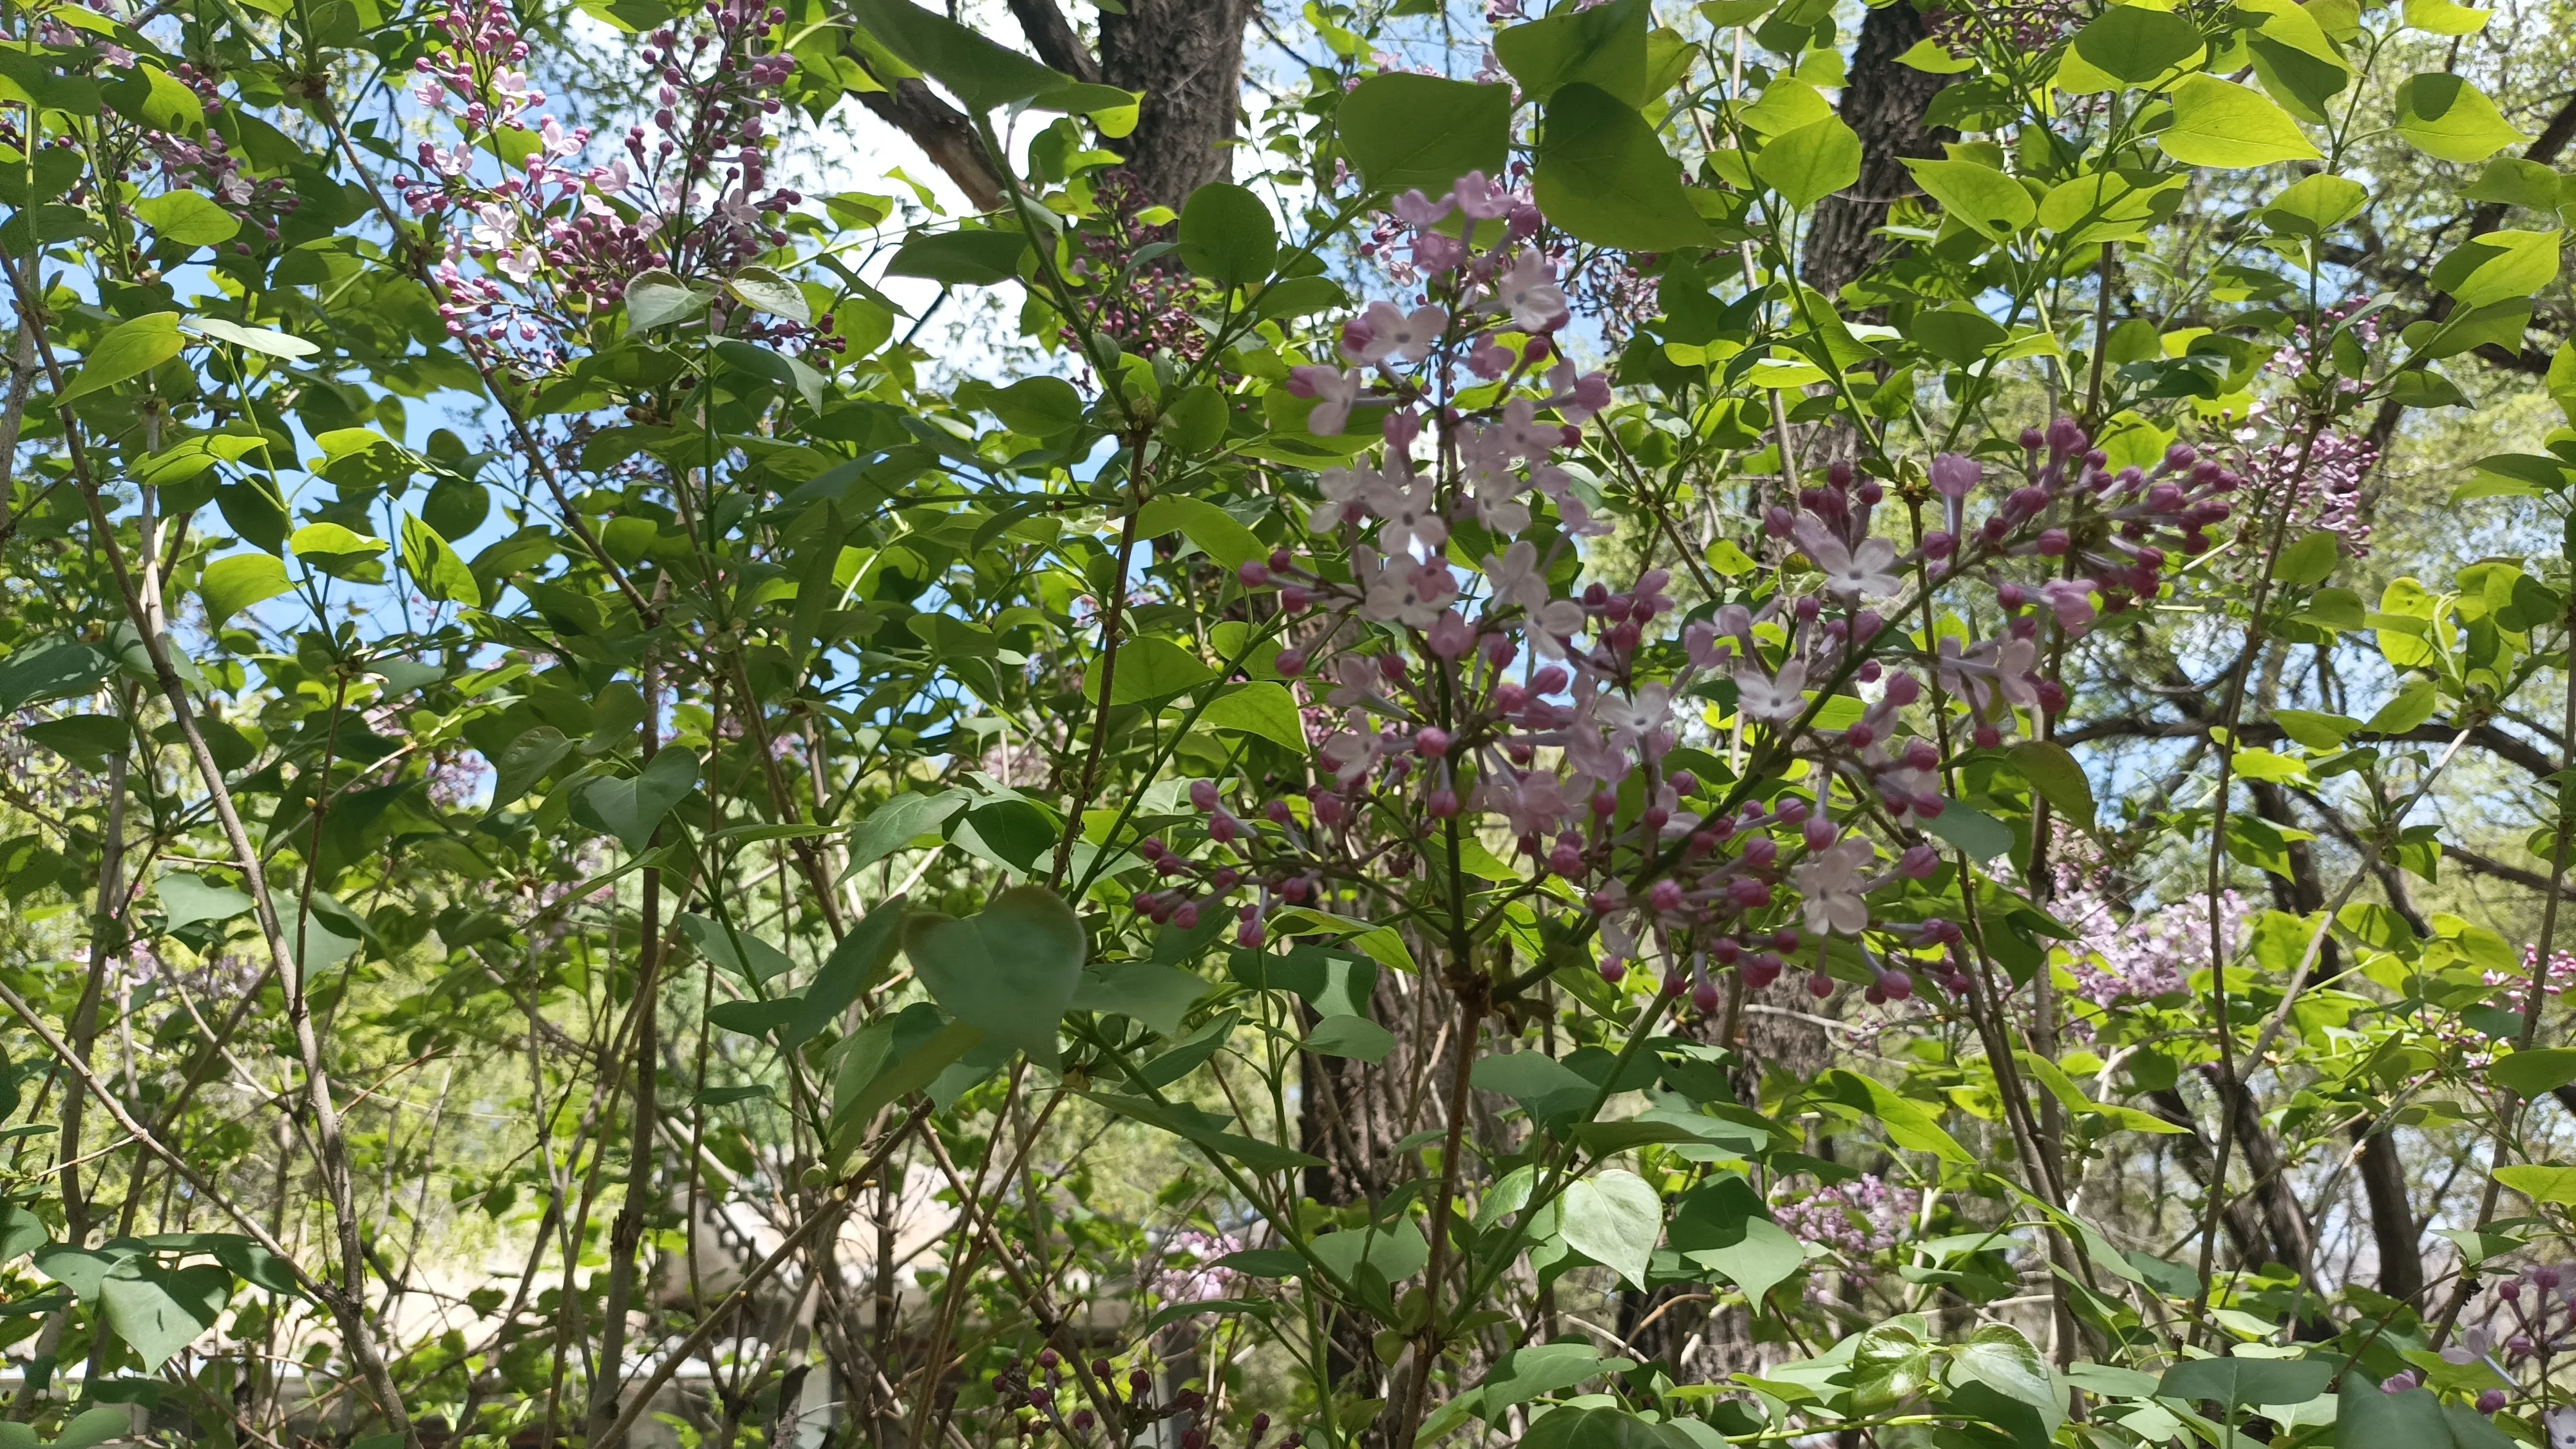 這紫丁香開得可真旺盛呀 丁香花過敏的人遭罪了 又到丁香花開的季節 空氣裡到處蕩漾着丁香花的芬芳 這個香氣太濃郁了 不過有